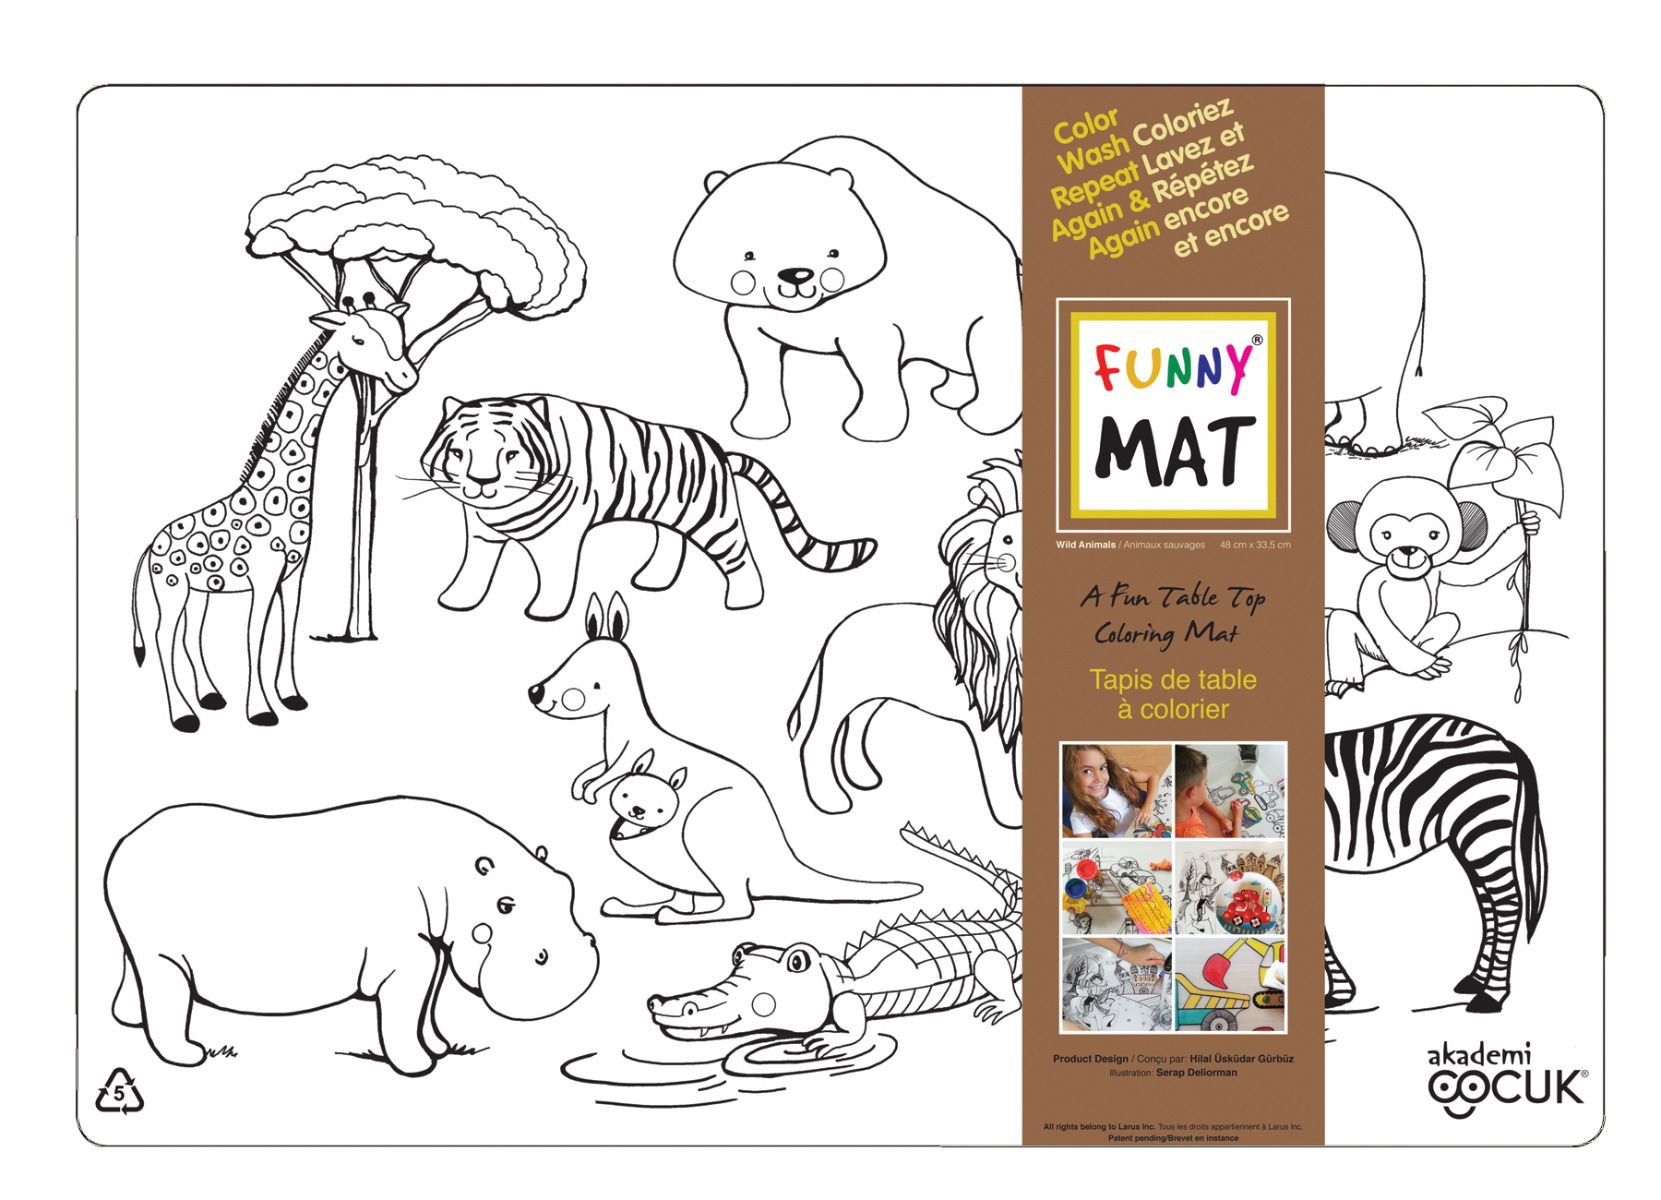 Funny MAT A Fun Table Top Coloring Mats - Wild Animals(Transparent, Single)